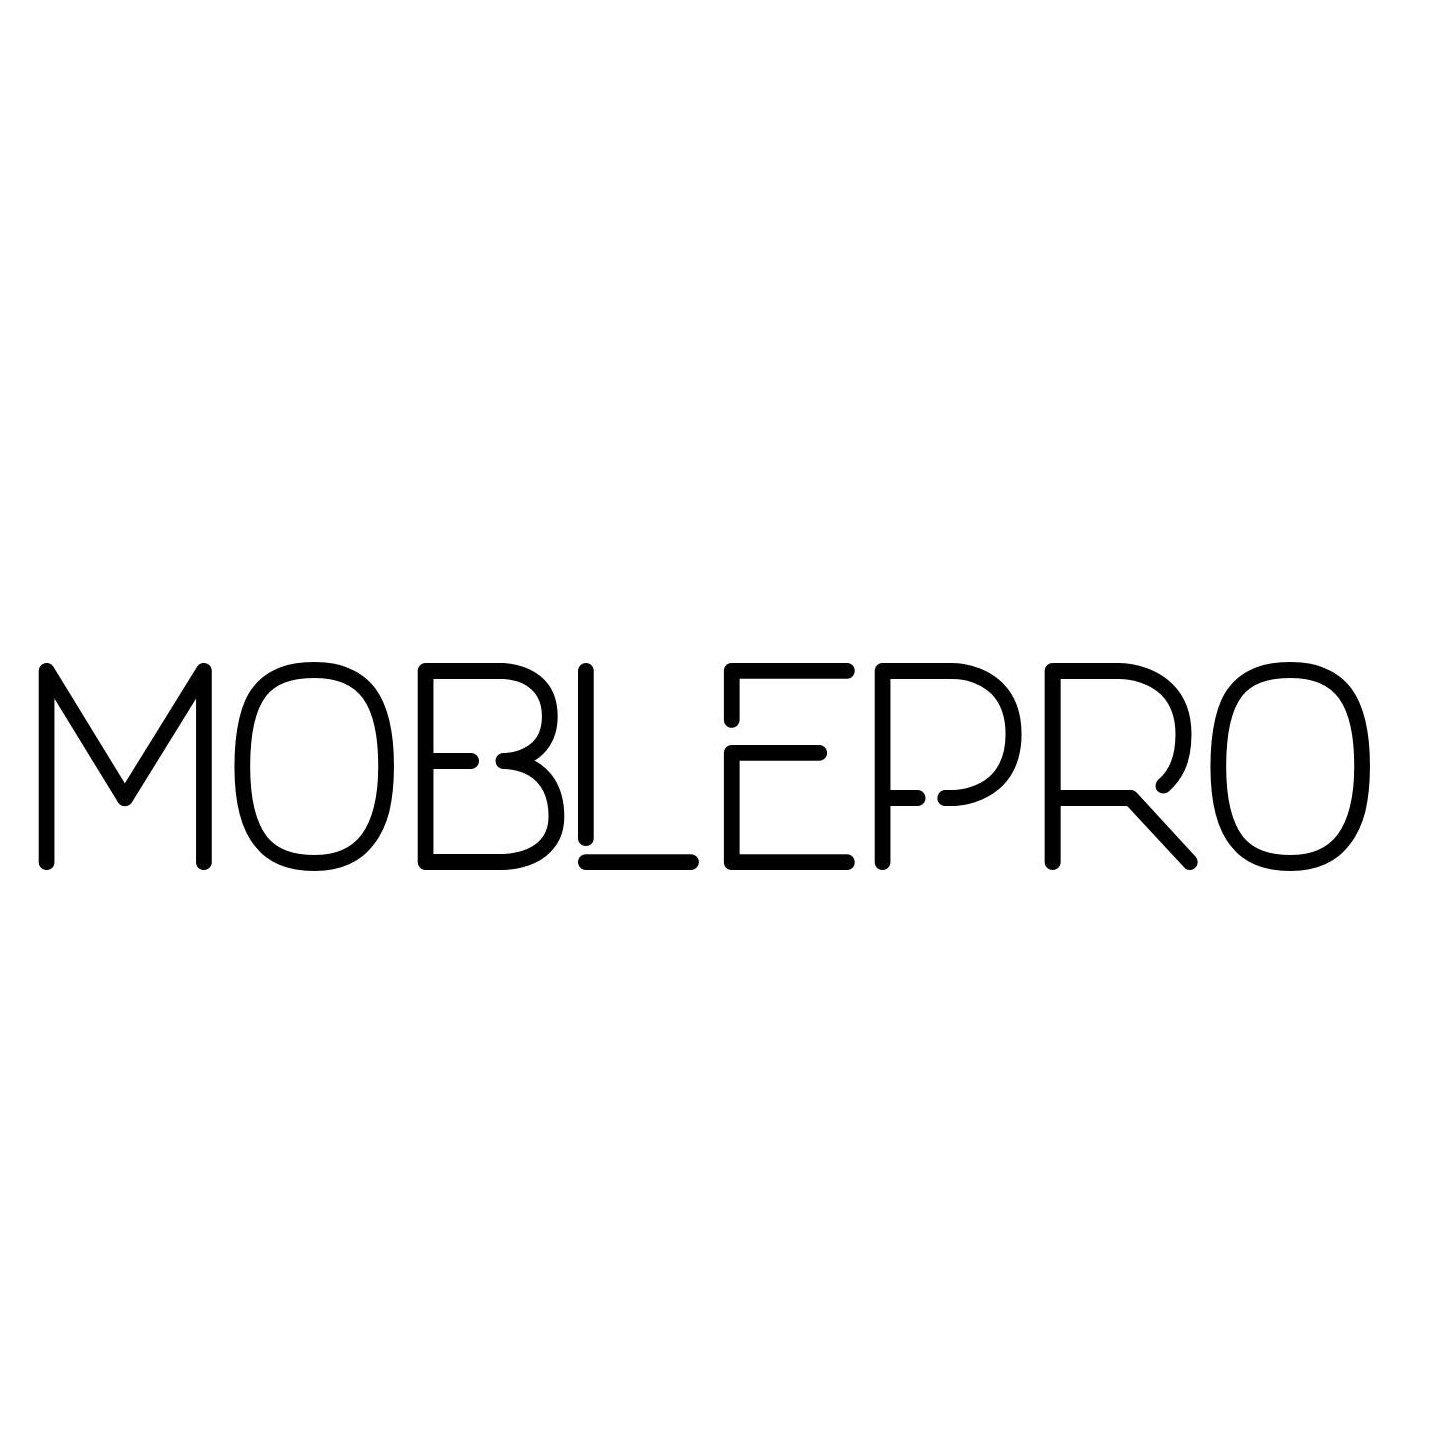 MOBLEPRO OÜ logo